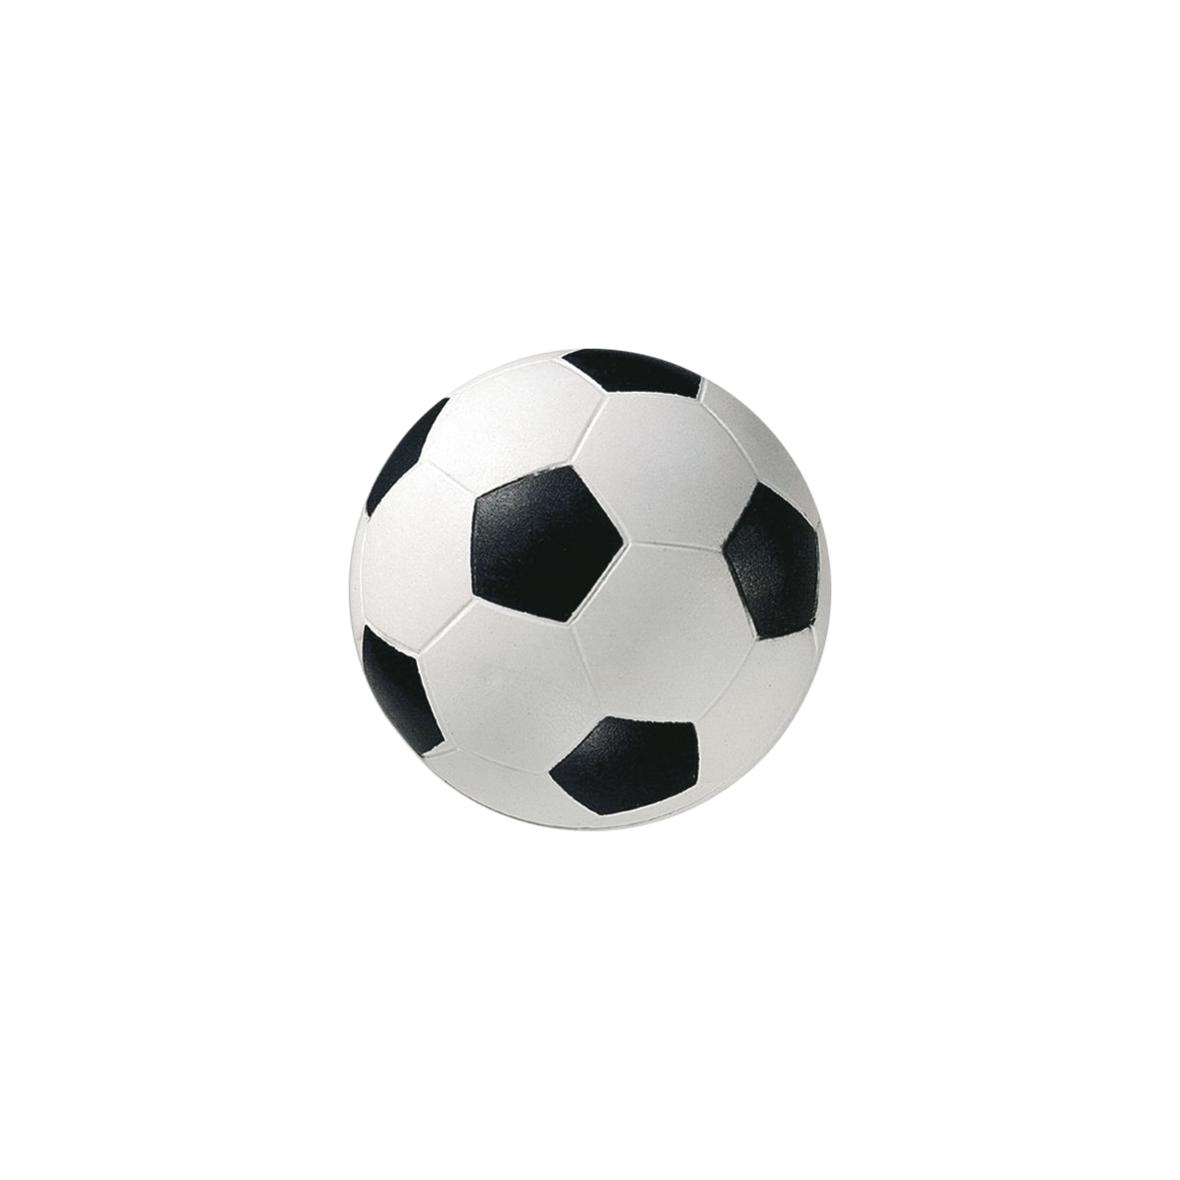 Rubber High Bounce Soccer Ball - Richmond